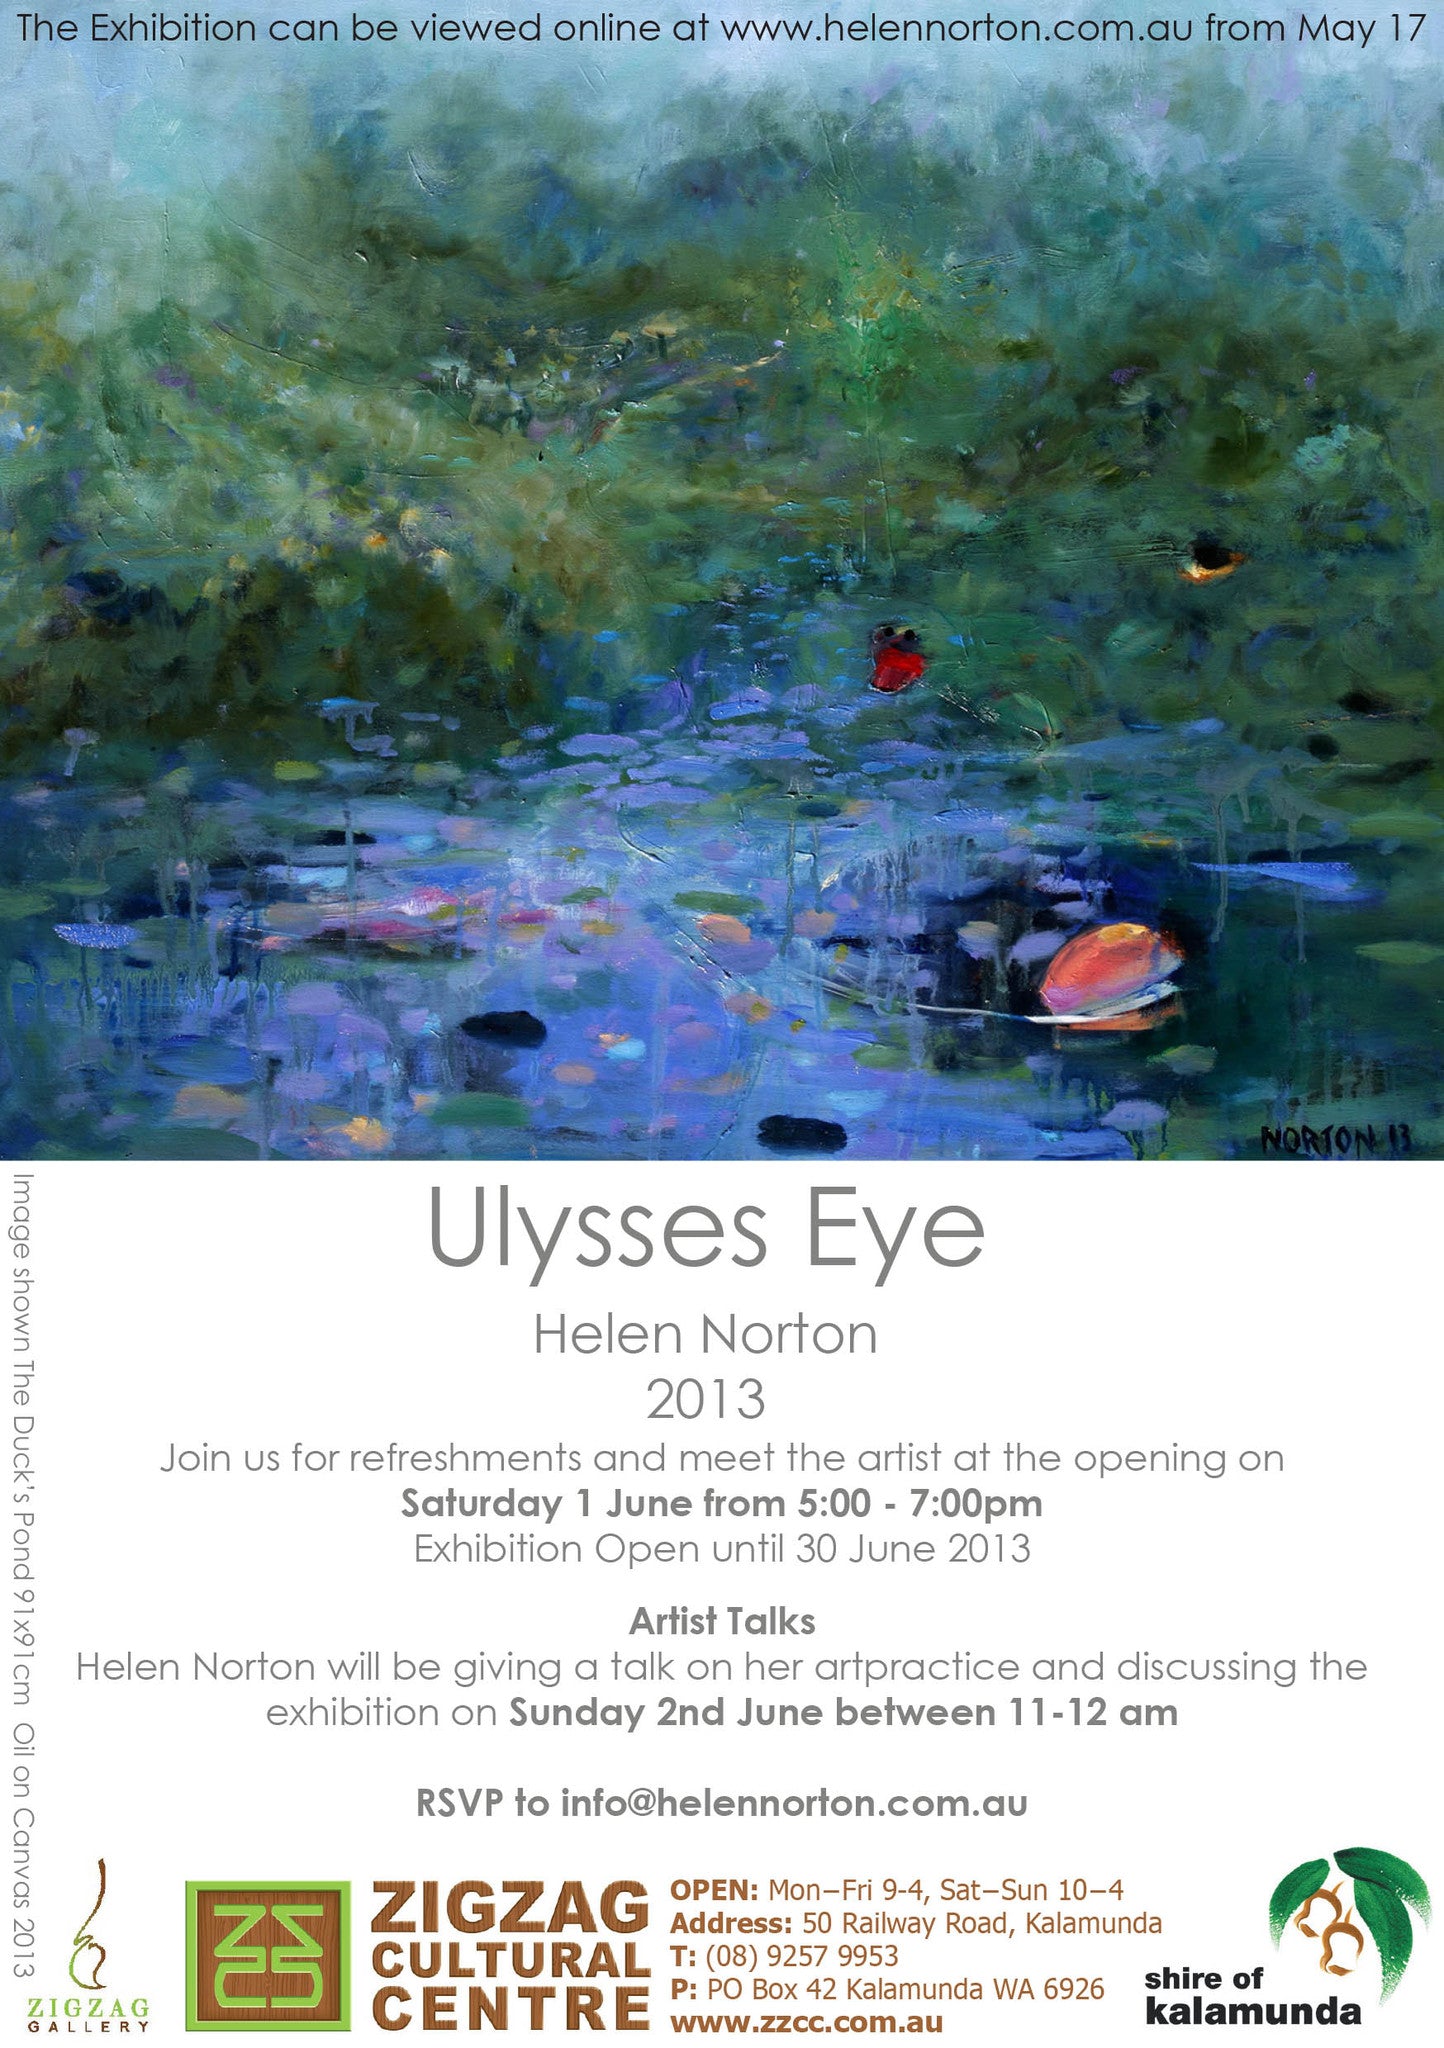 2013 Ulysses Eye Press Release